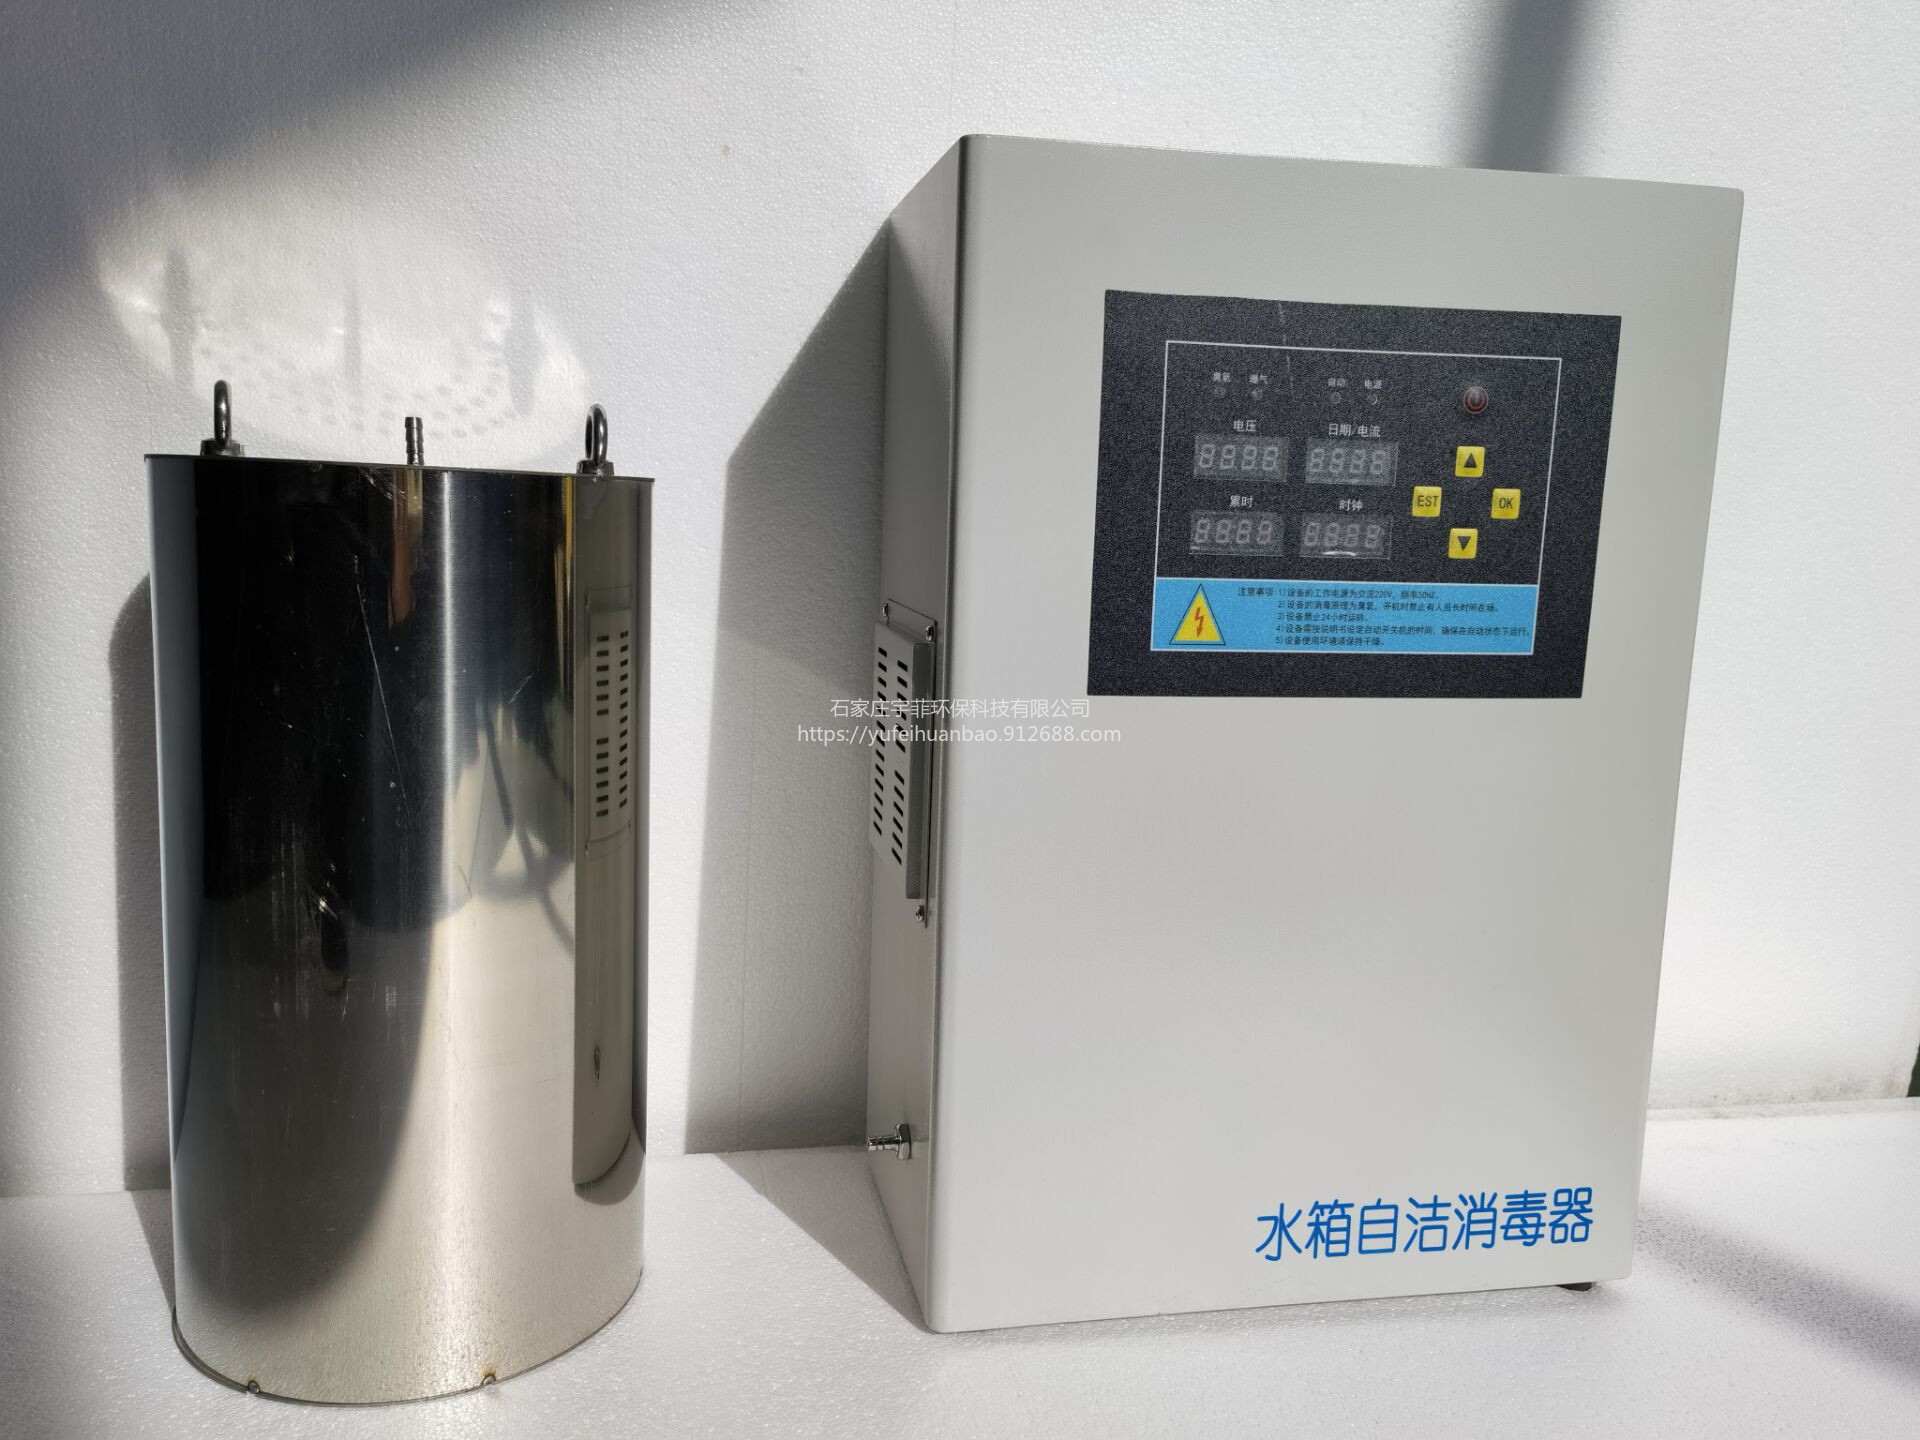 宇菲供应WTS-2A系列微电解水箱消毒器臭氧发生单元模块化图片